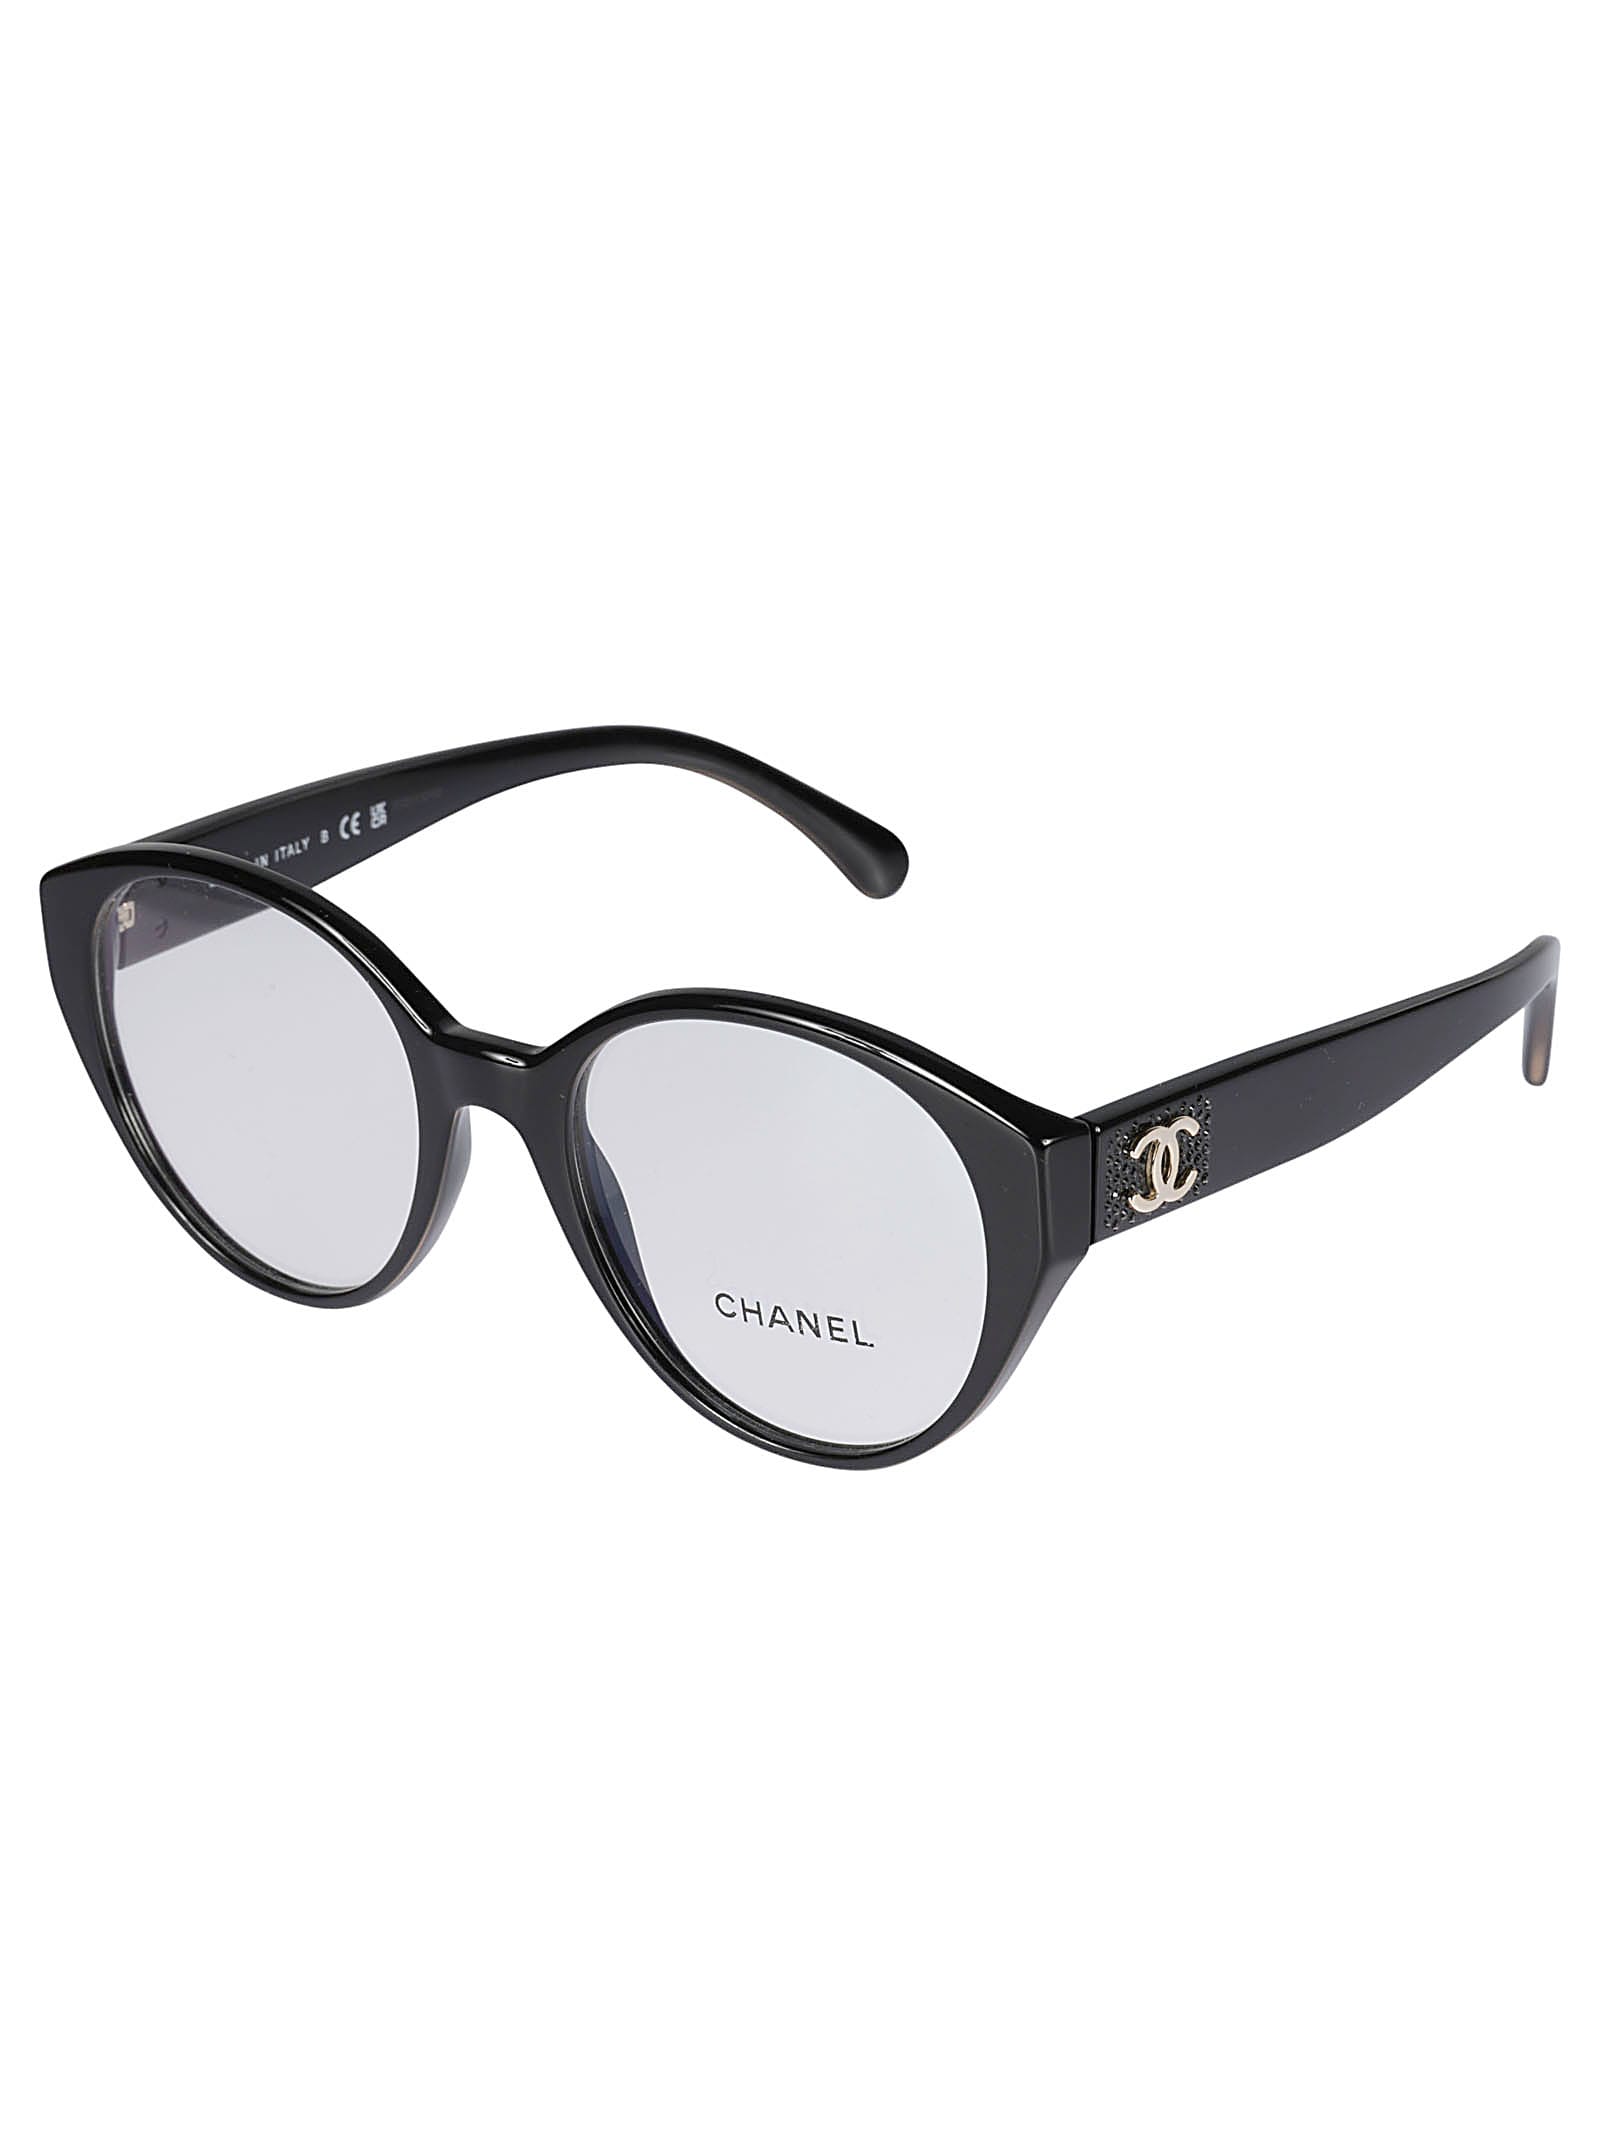 Chanel Round Eye Glasses